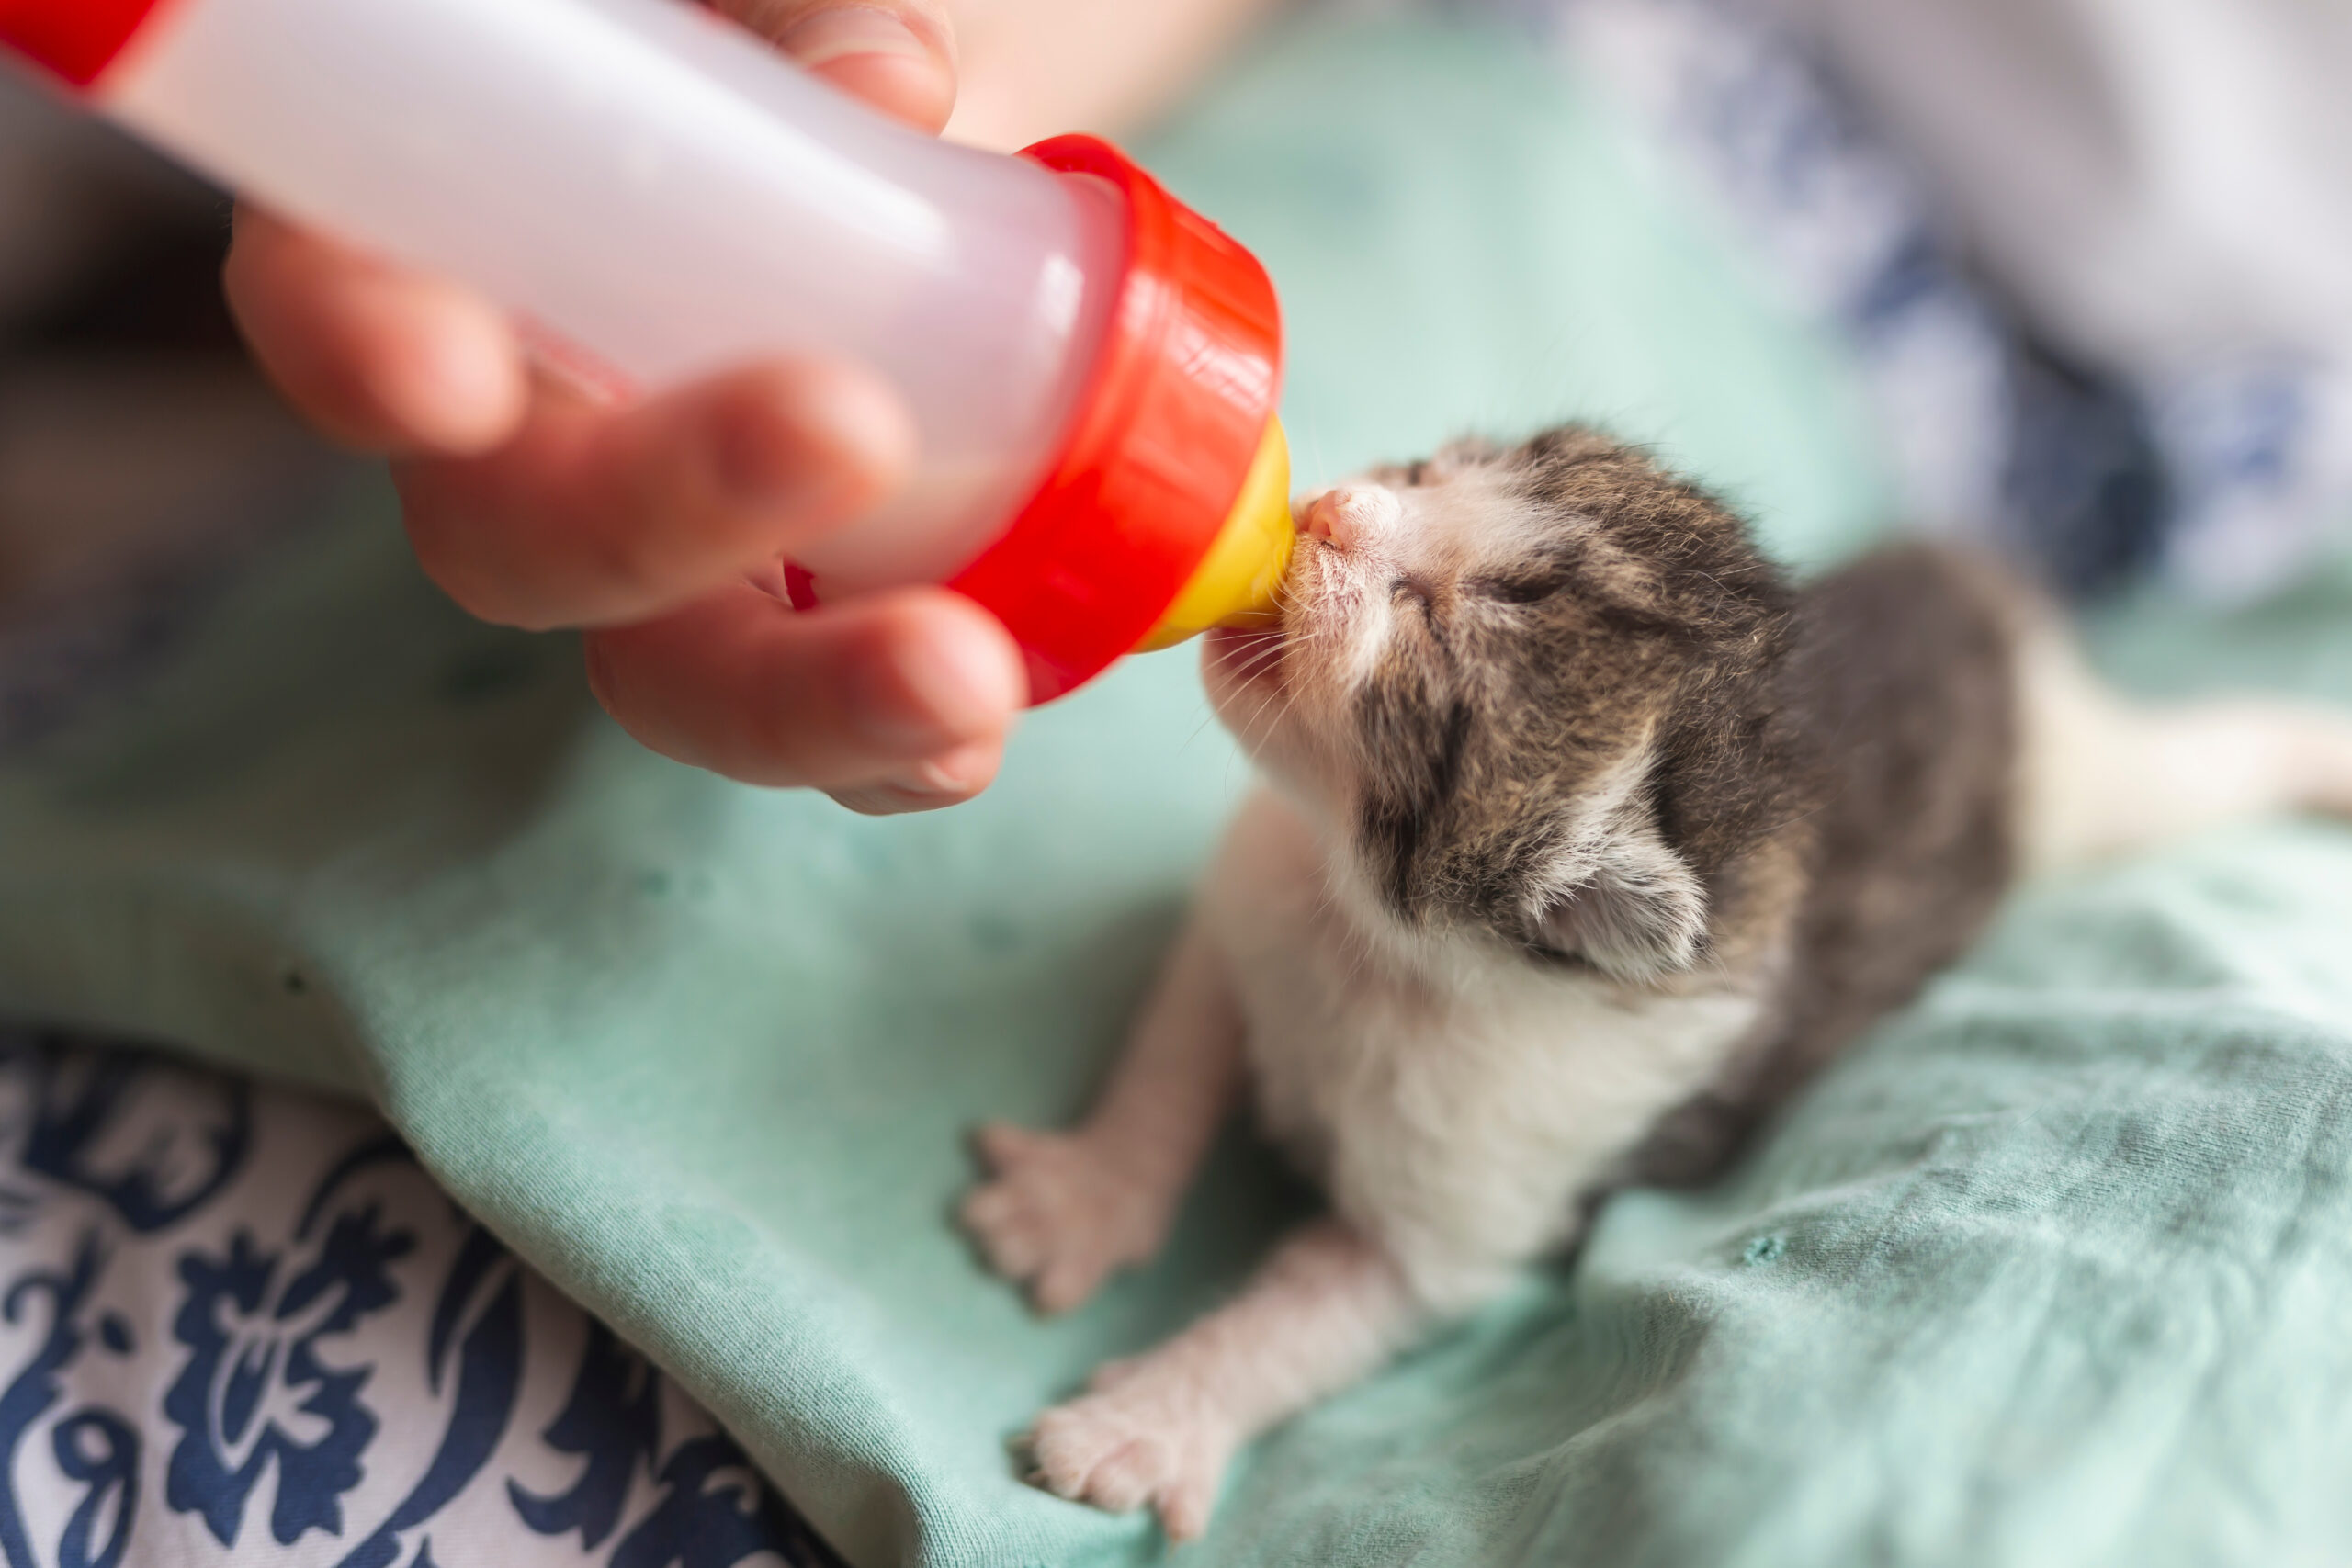 An animal shelter volunteer bottle feeding a tiny kitten